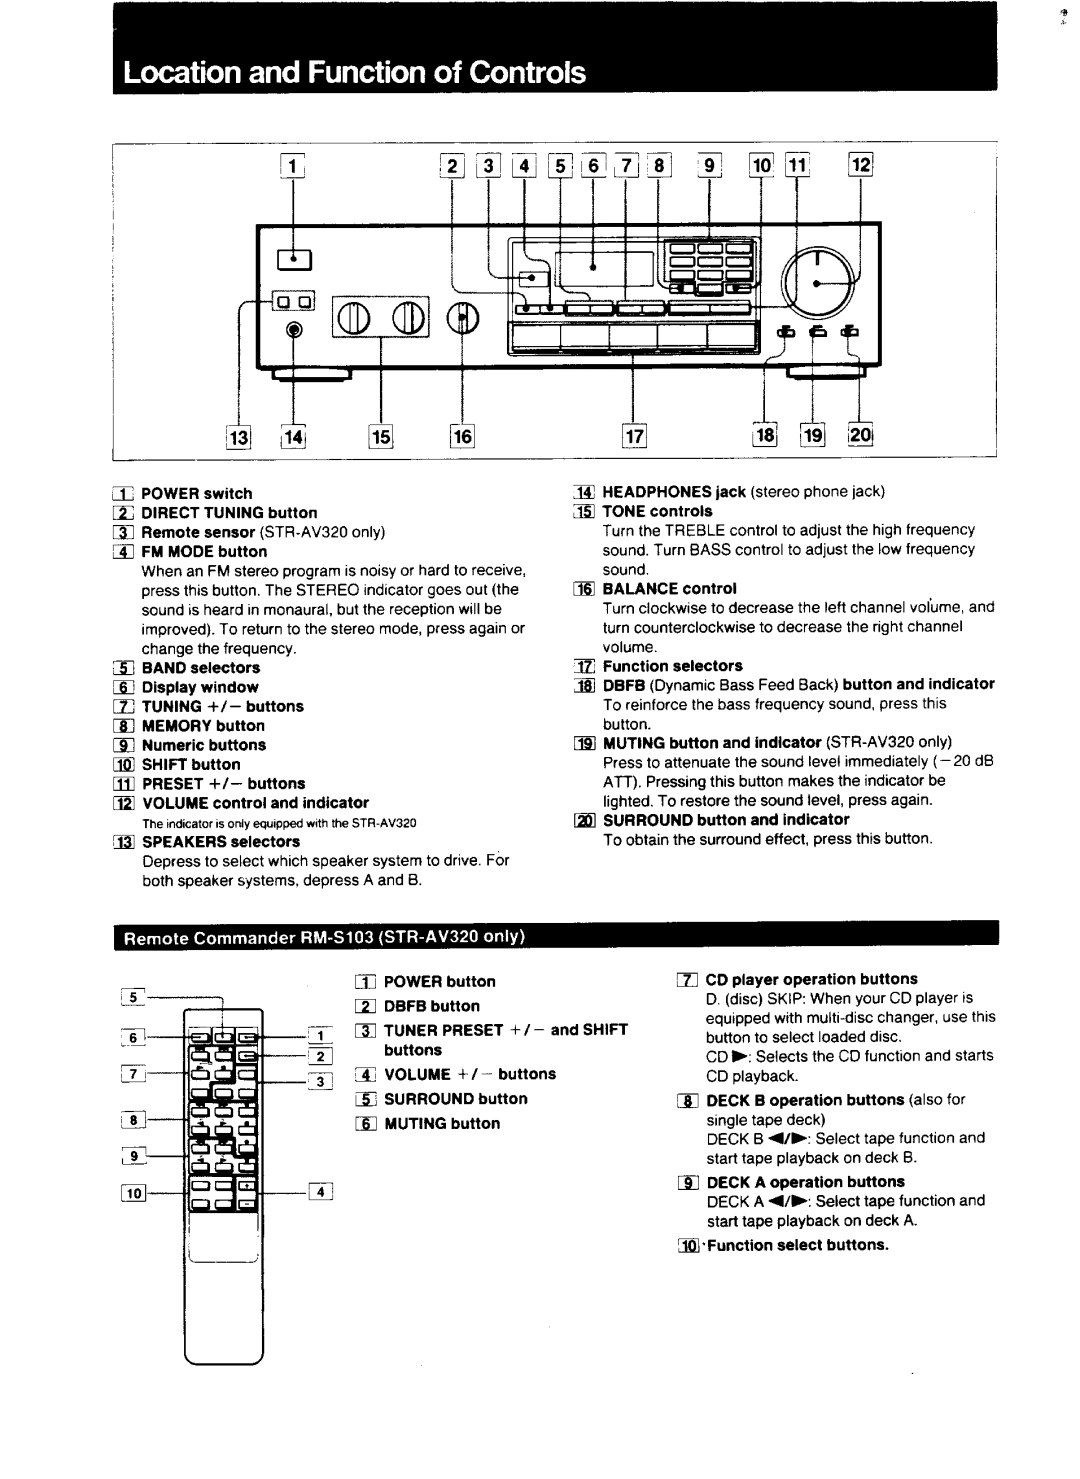 Sony STR-AV320, STR-AV220 manual 